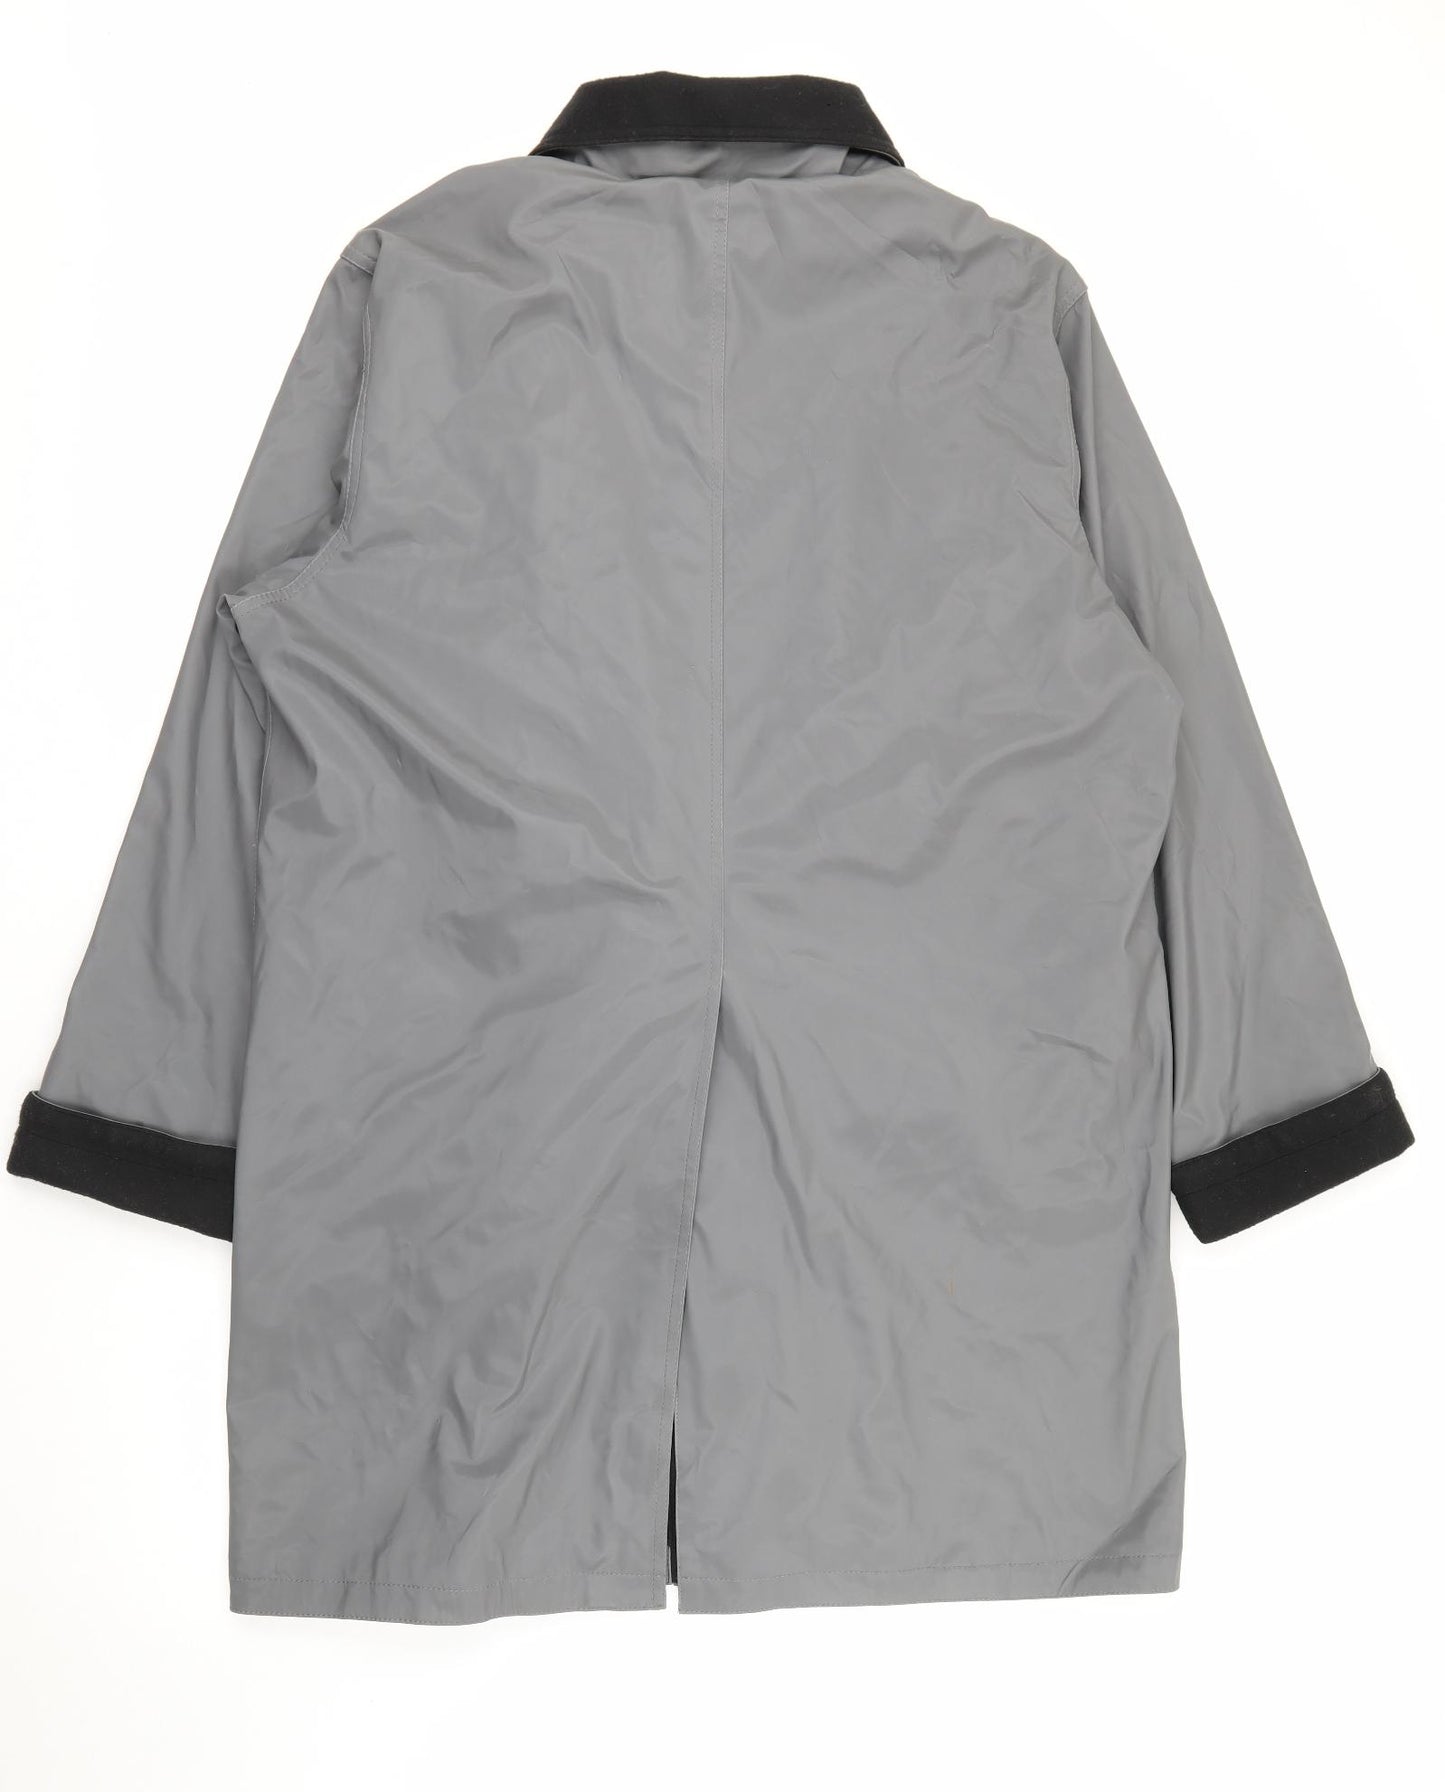 DENNIS Womens Grey   Rain Coat Coat Size L  Zip